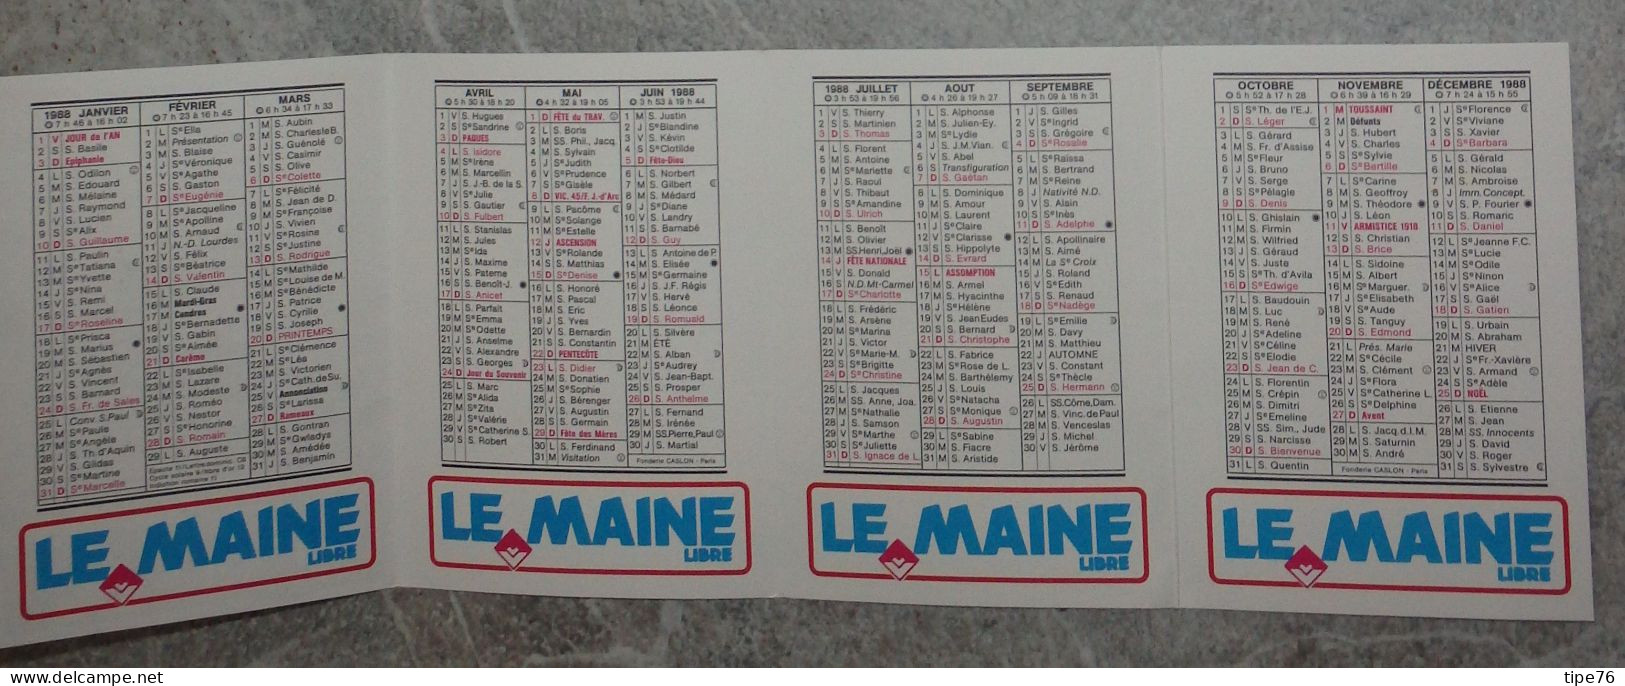 Petit Calendrier De Poche 1988 Journal Le Maine Libre - Le Mans La Flèche Mamers Sablé La Ferté Bernard Voiture - Formato Piccolo : 1981-90